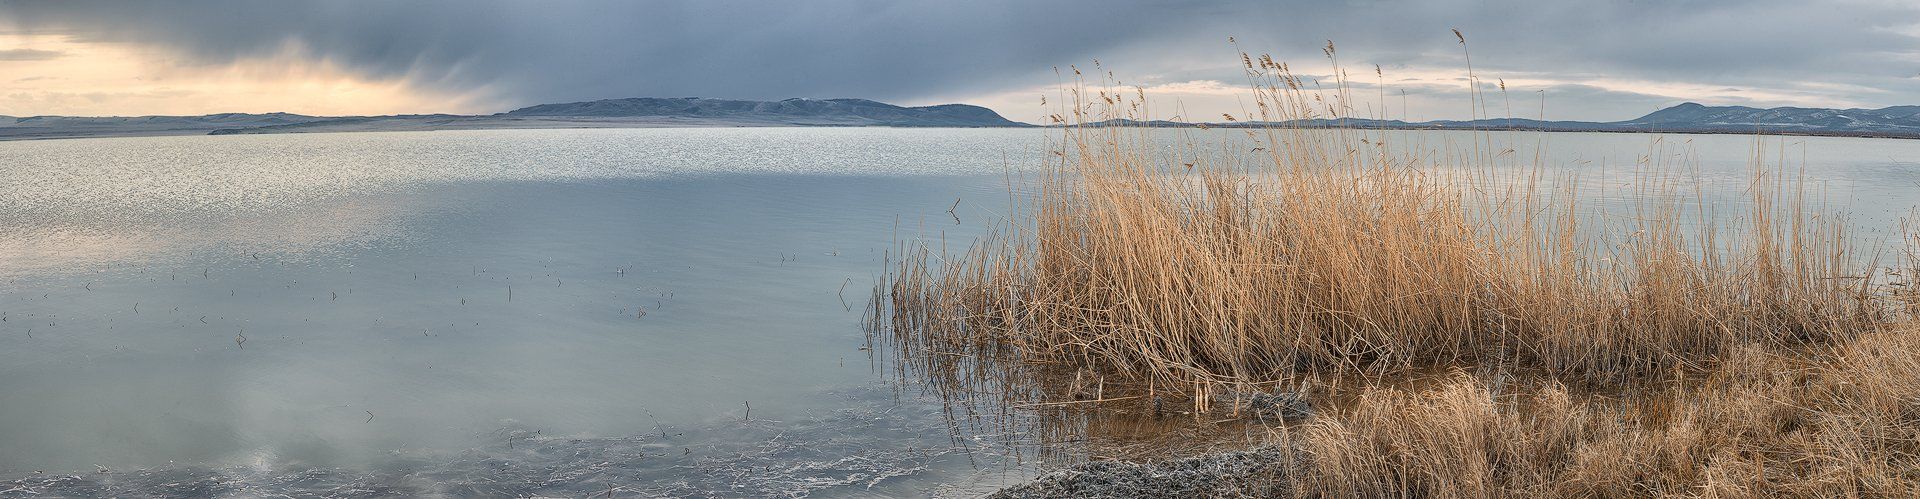 Хакасия, 2016, Озеро Черное, пейзаж, рассвет, вода, тростник, Дмитрий Дубиковский